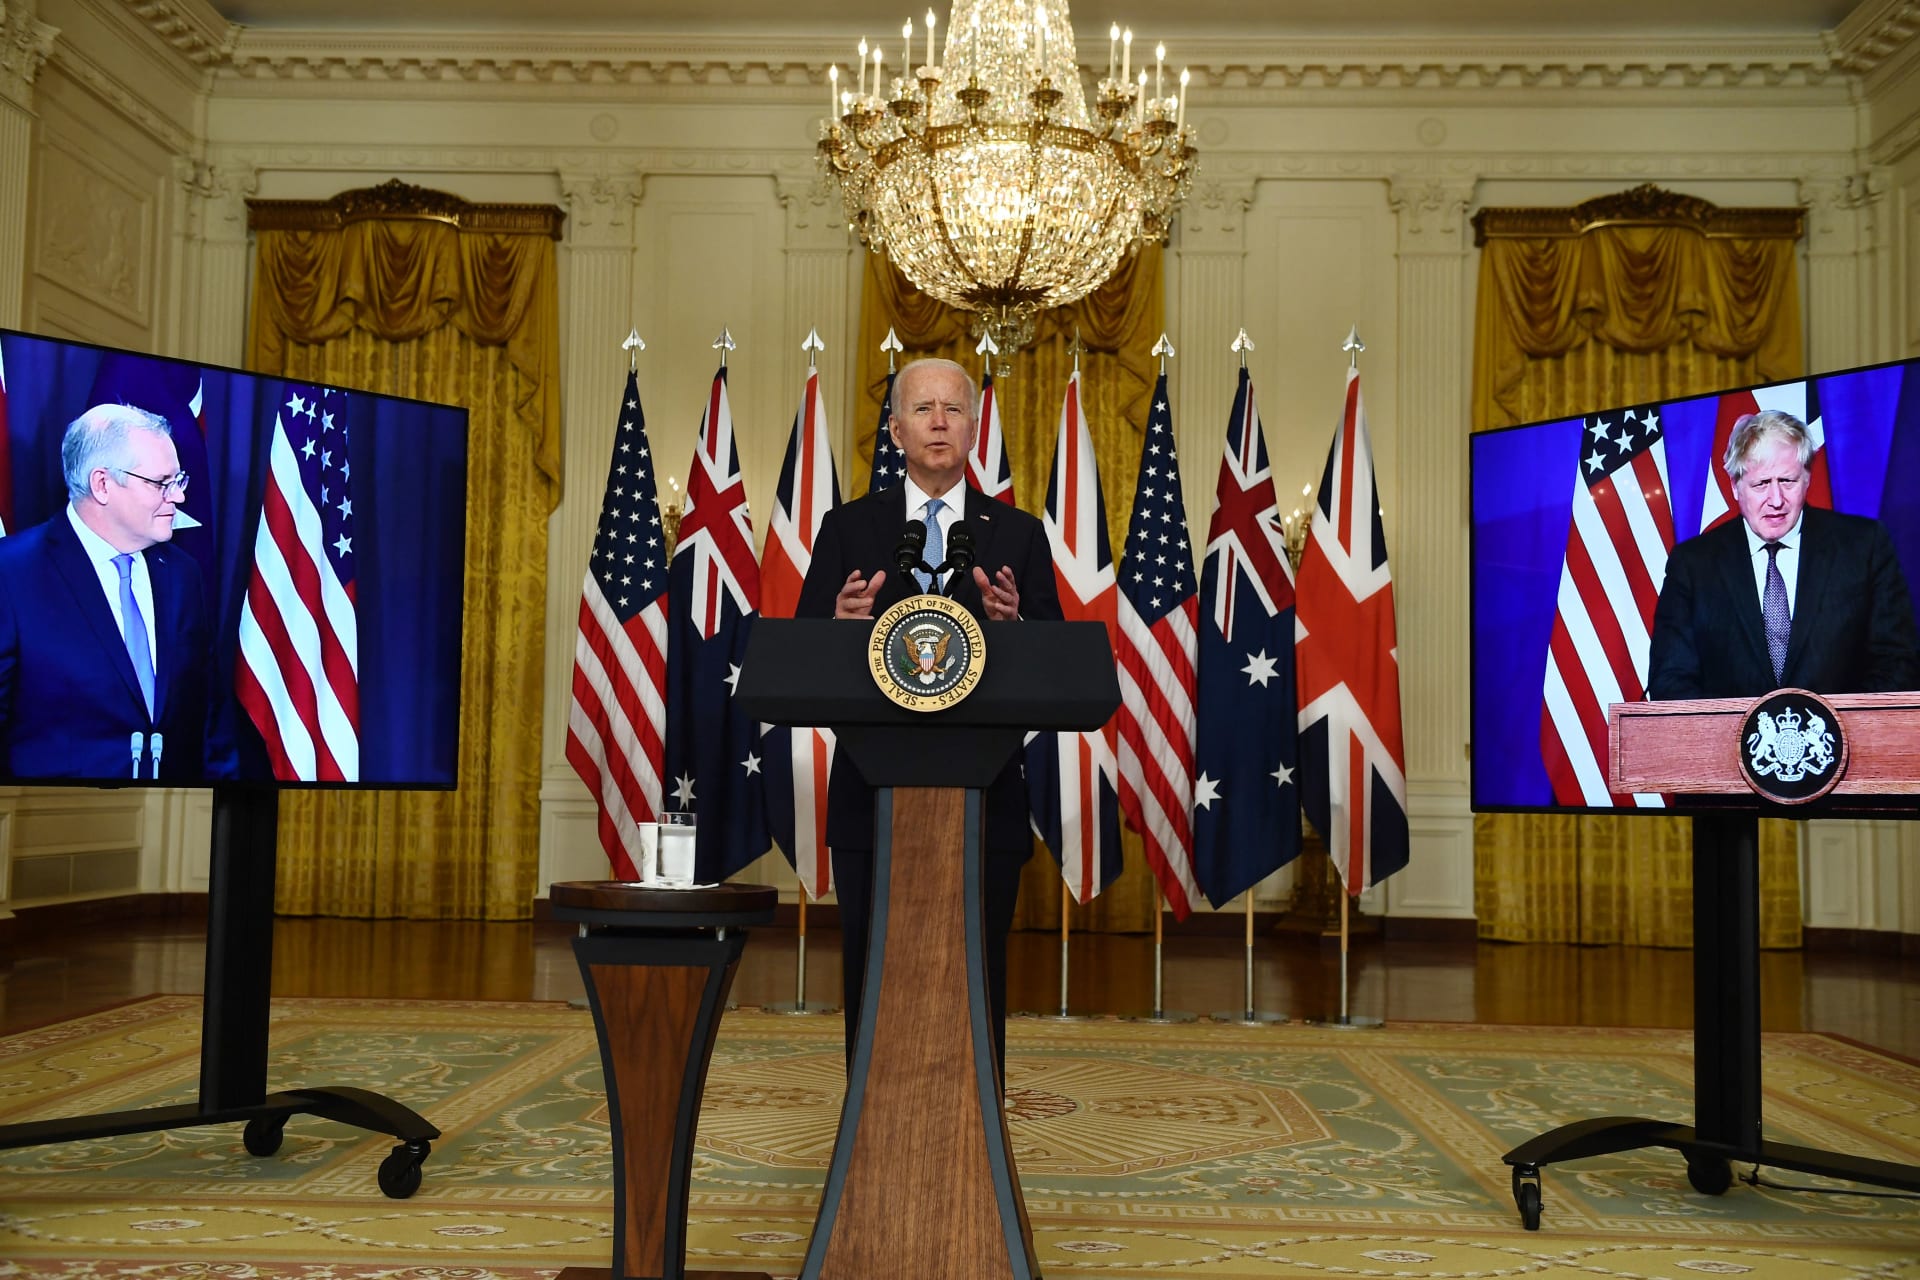 صورة أرشيقية للرئيس الأمريكي جو بايدن ورئيس الوزراء البريطاني بوريس جونسون، ونظيره الأسترالي سكوت موريسون